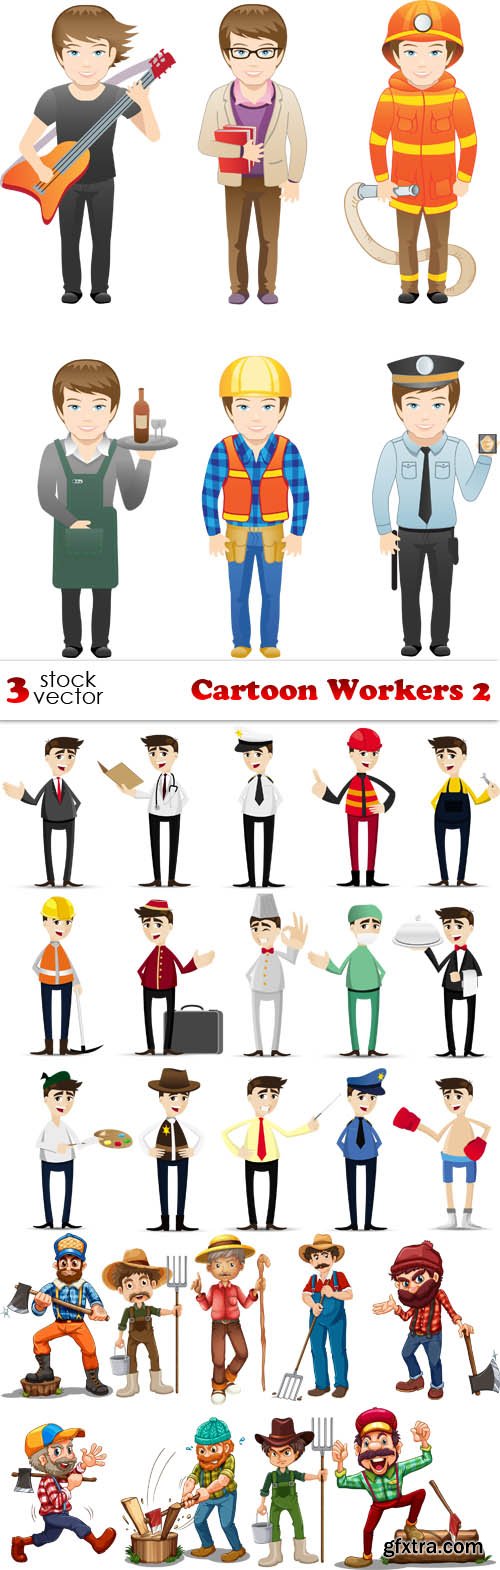 Vectors - Cartoon Workers 2